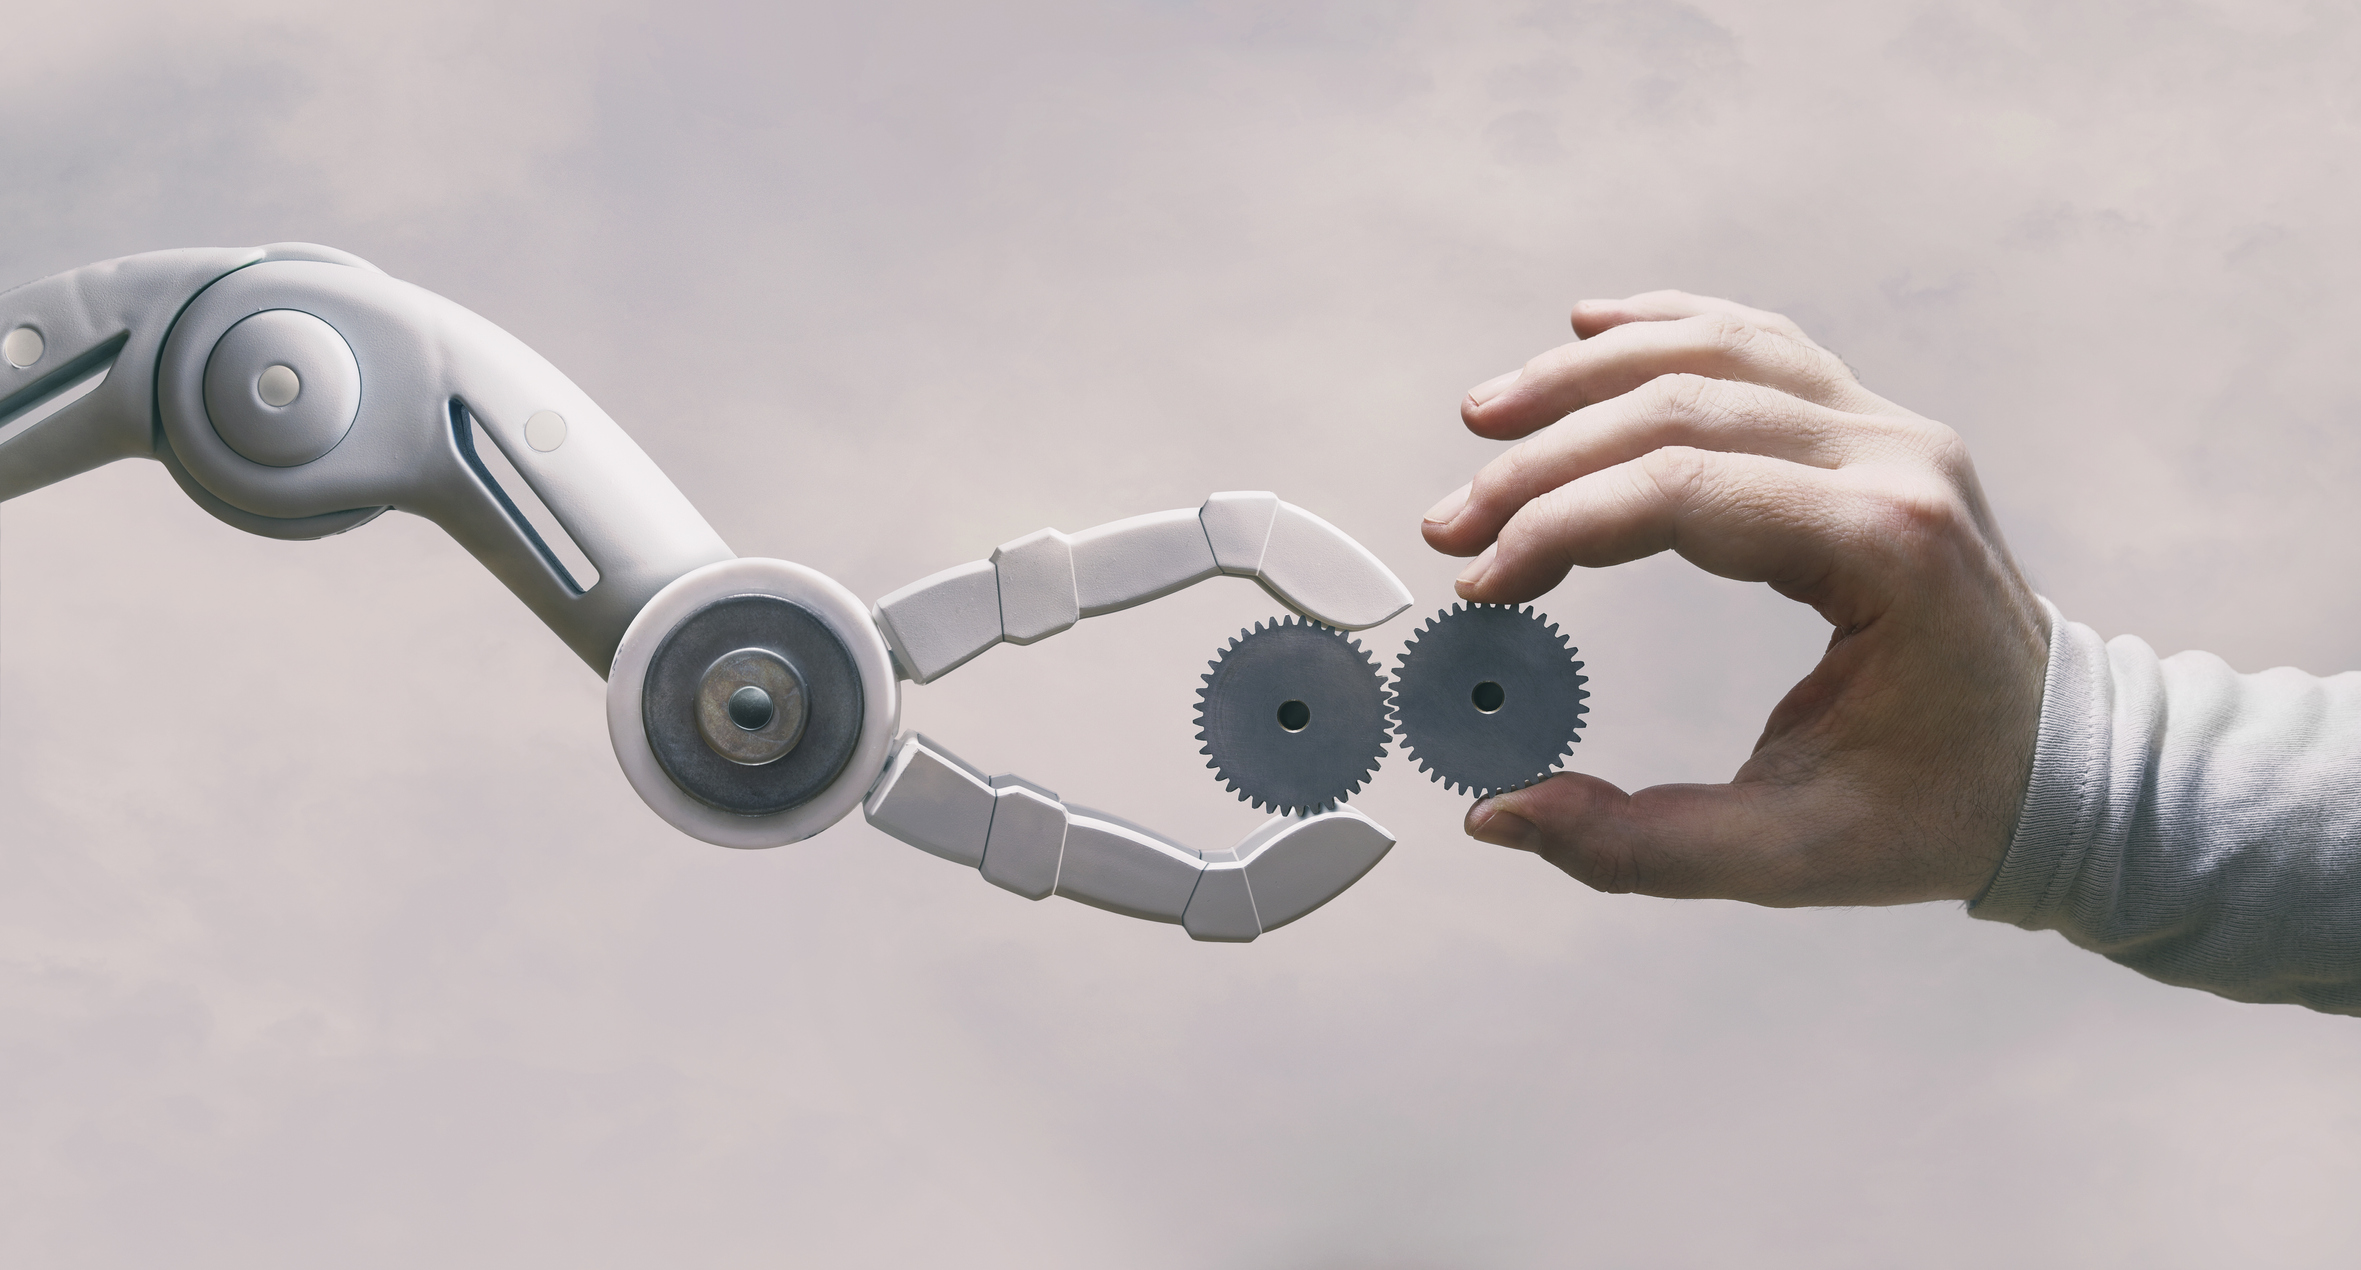 Nowe algorytmy AI zwiększą autonomię robotów